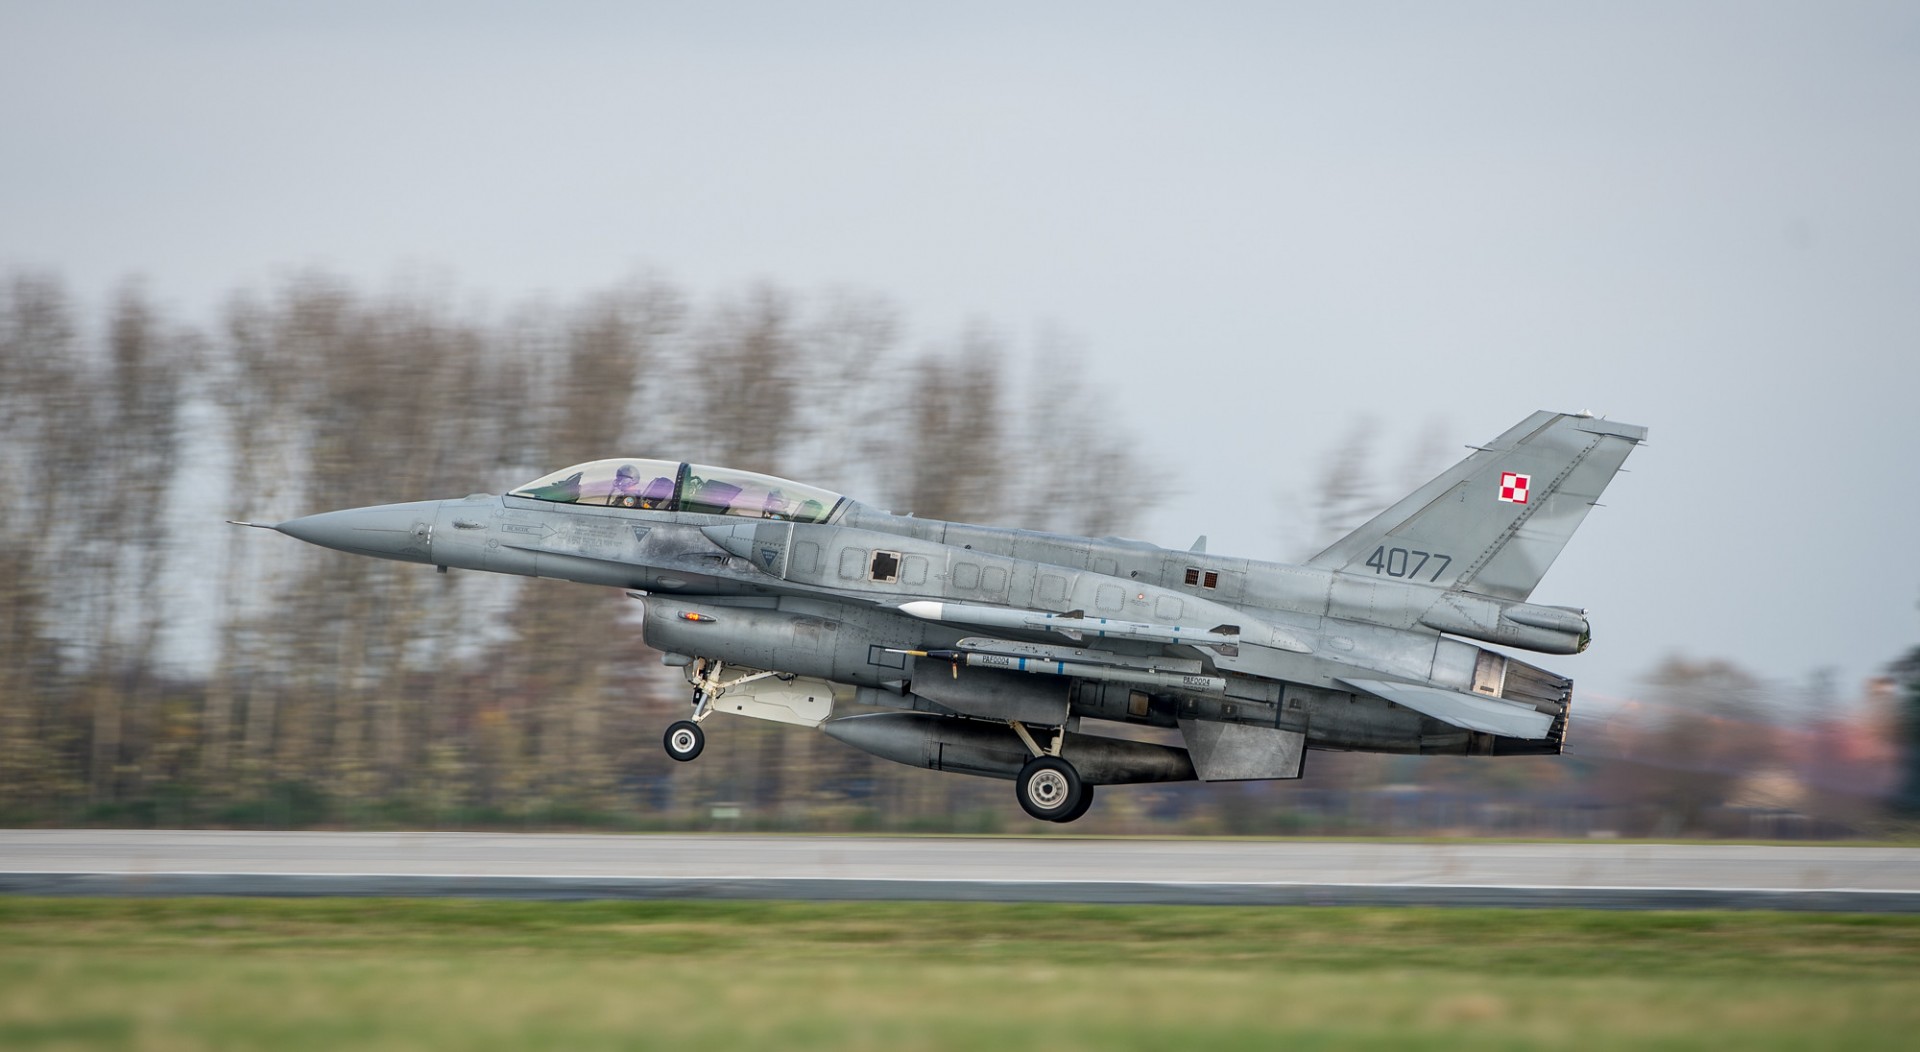 Polski F-16 (zdjęcie ilustracyjne). Fot. SSgt Ian Houlding GBR Army/NATO/SFJZ13